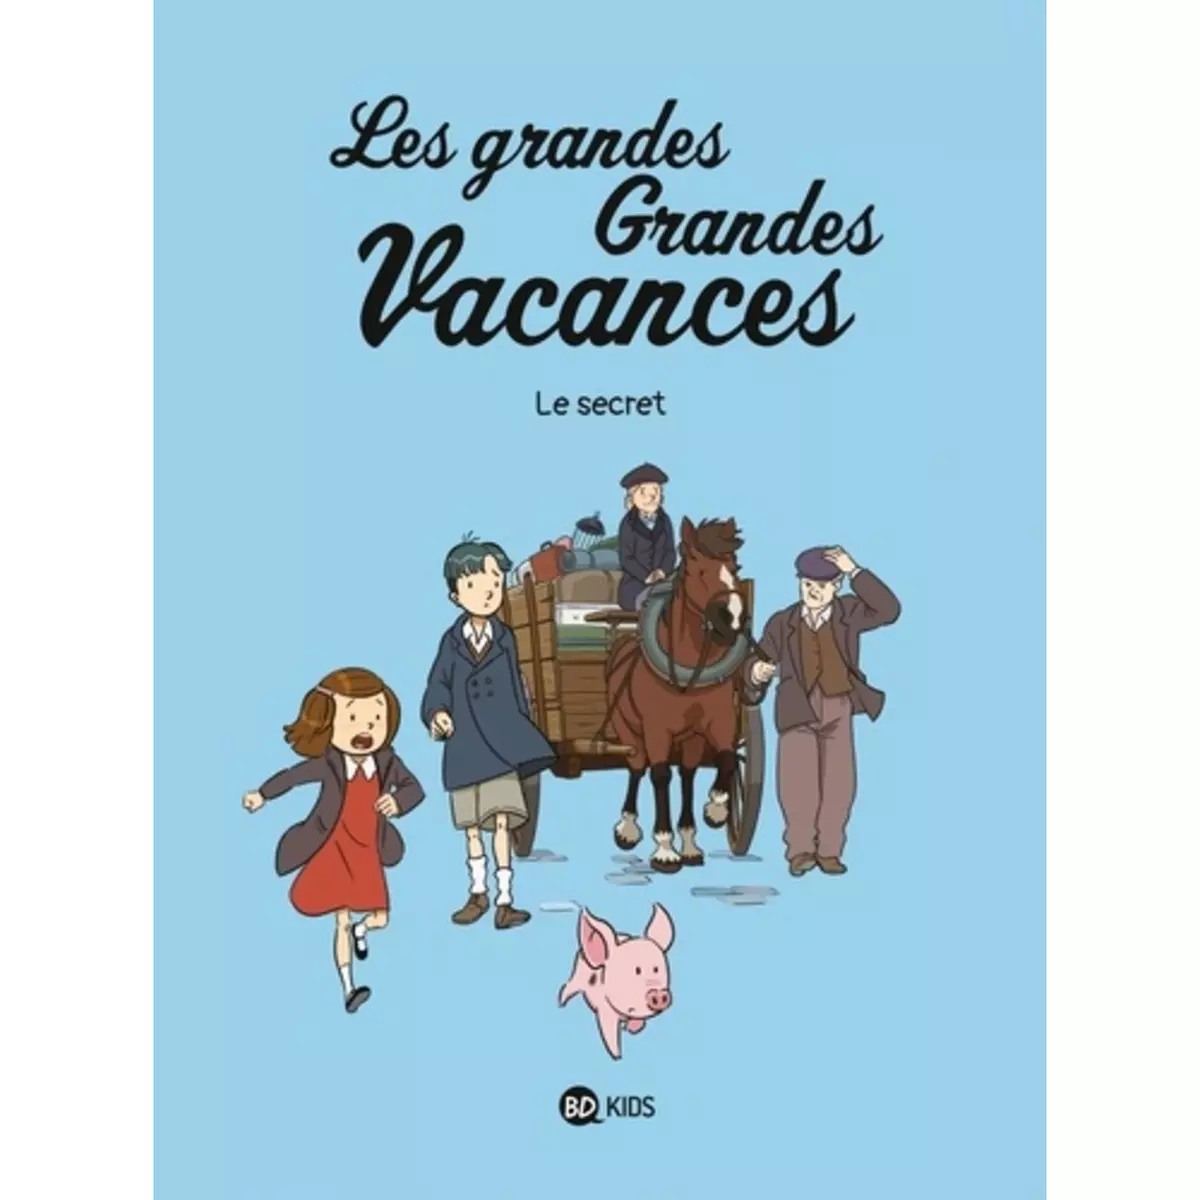  LES GRANDES GRANDES VACANCES TOME 2 : LE SECRET, Boulet Gwénaëlle